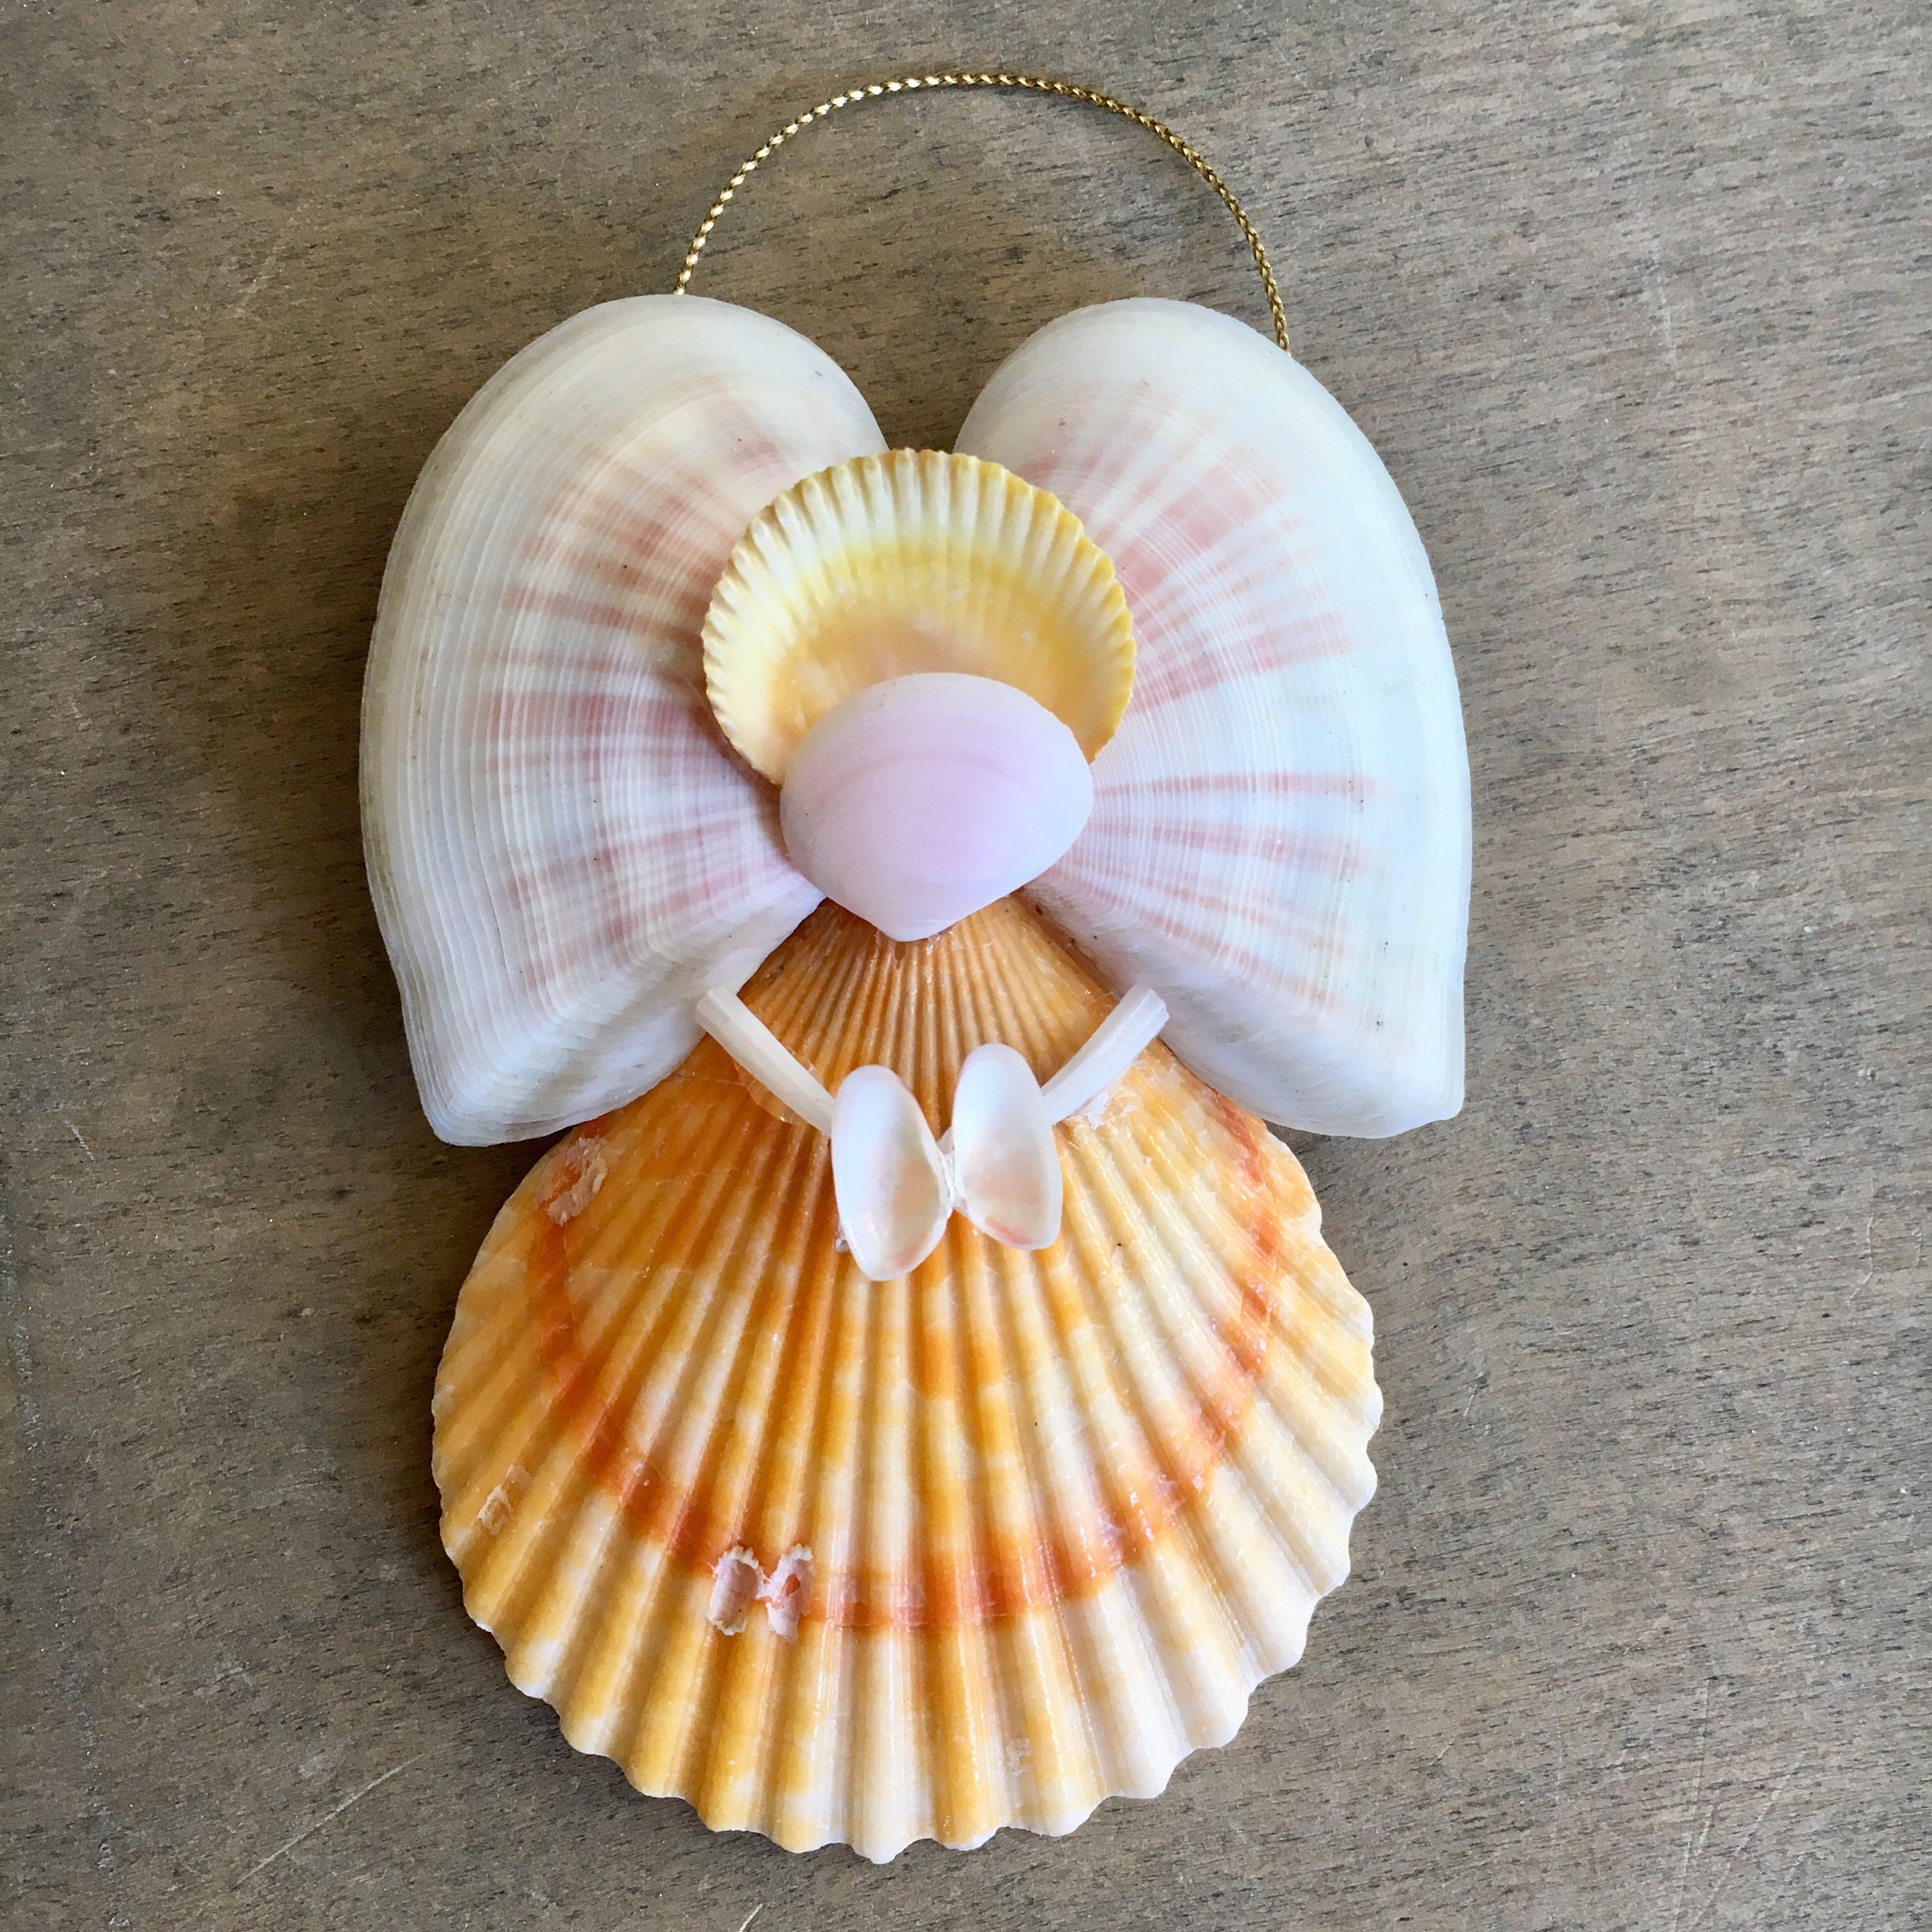 Buy Bulk Seashells for Crafts - Shells in Bulk - California Seashell